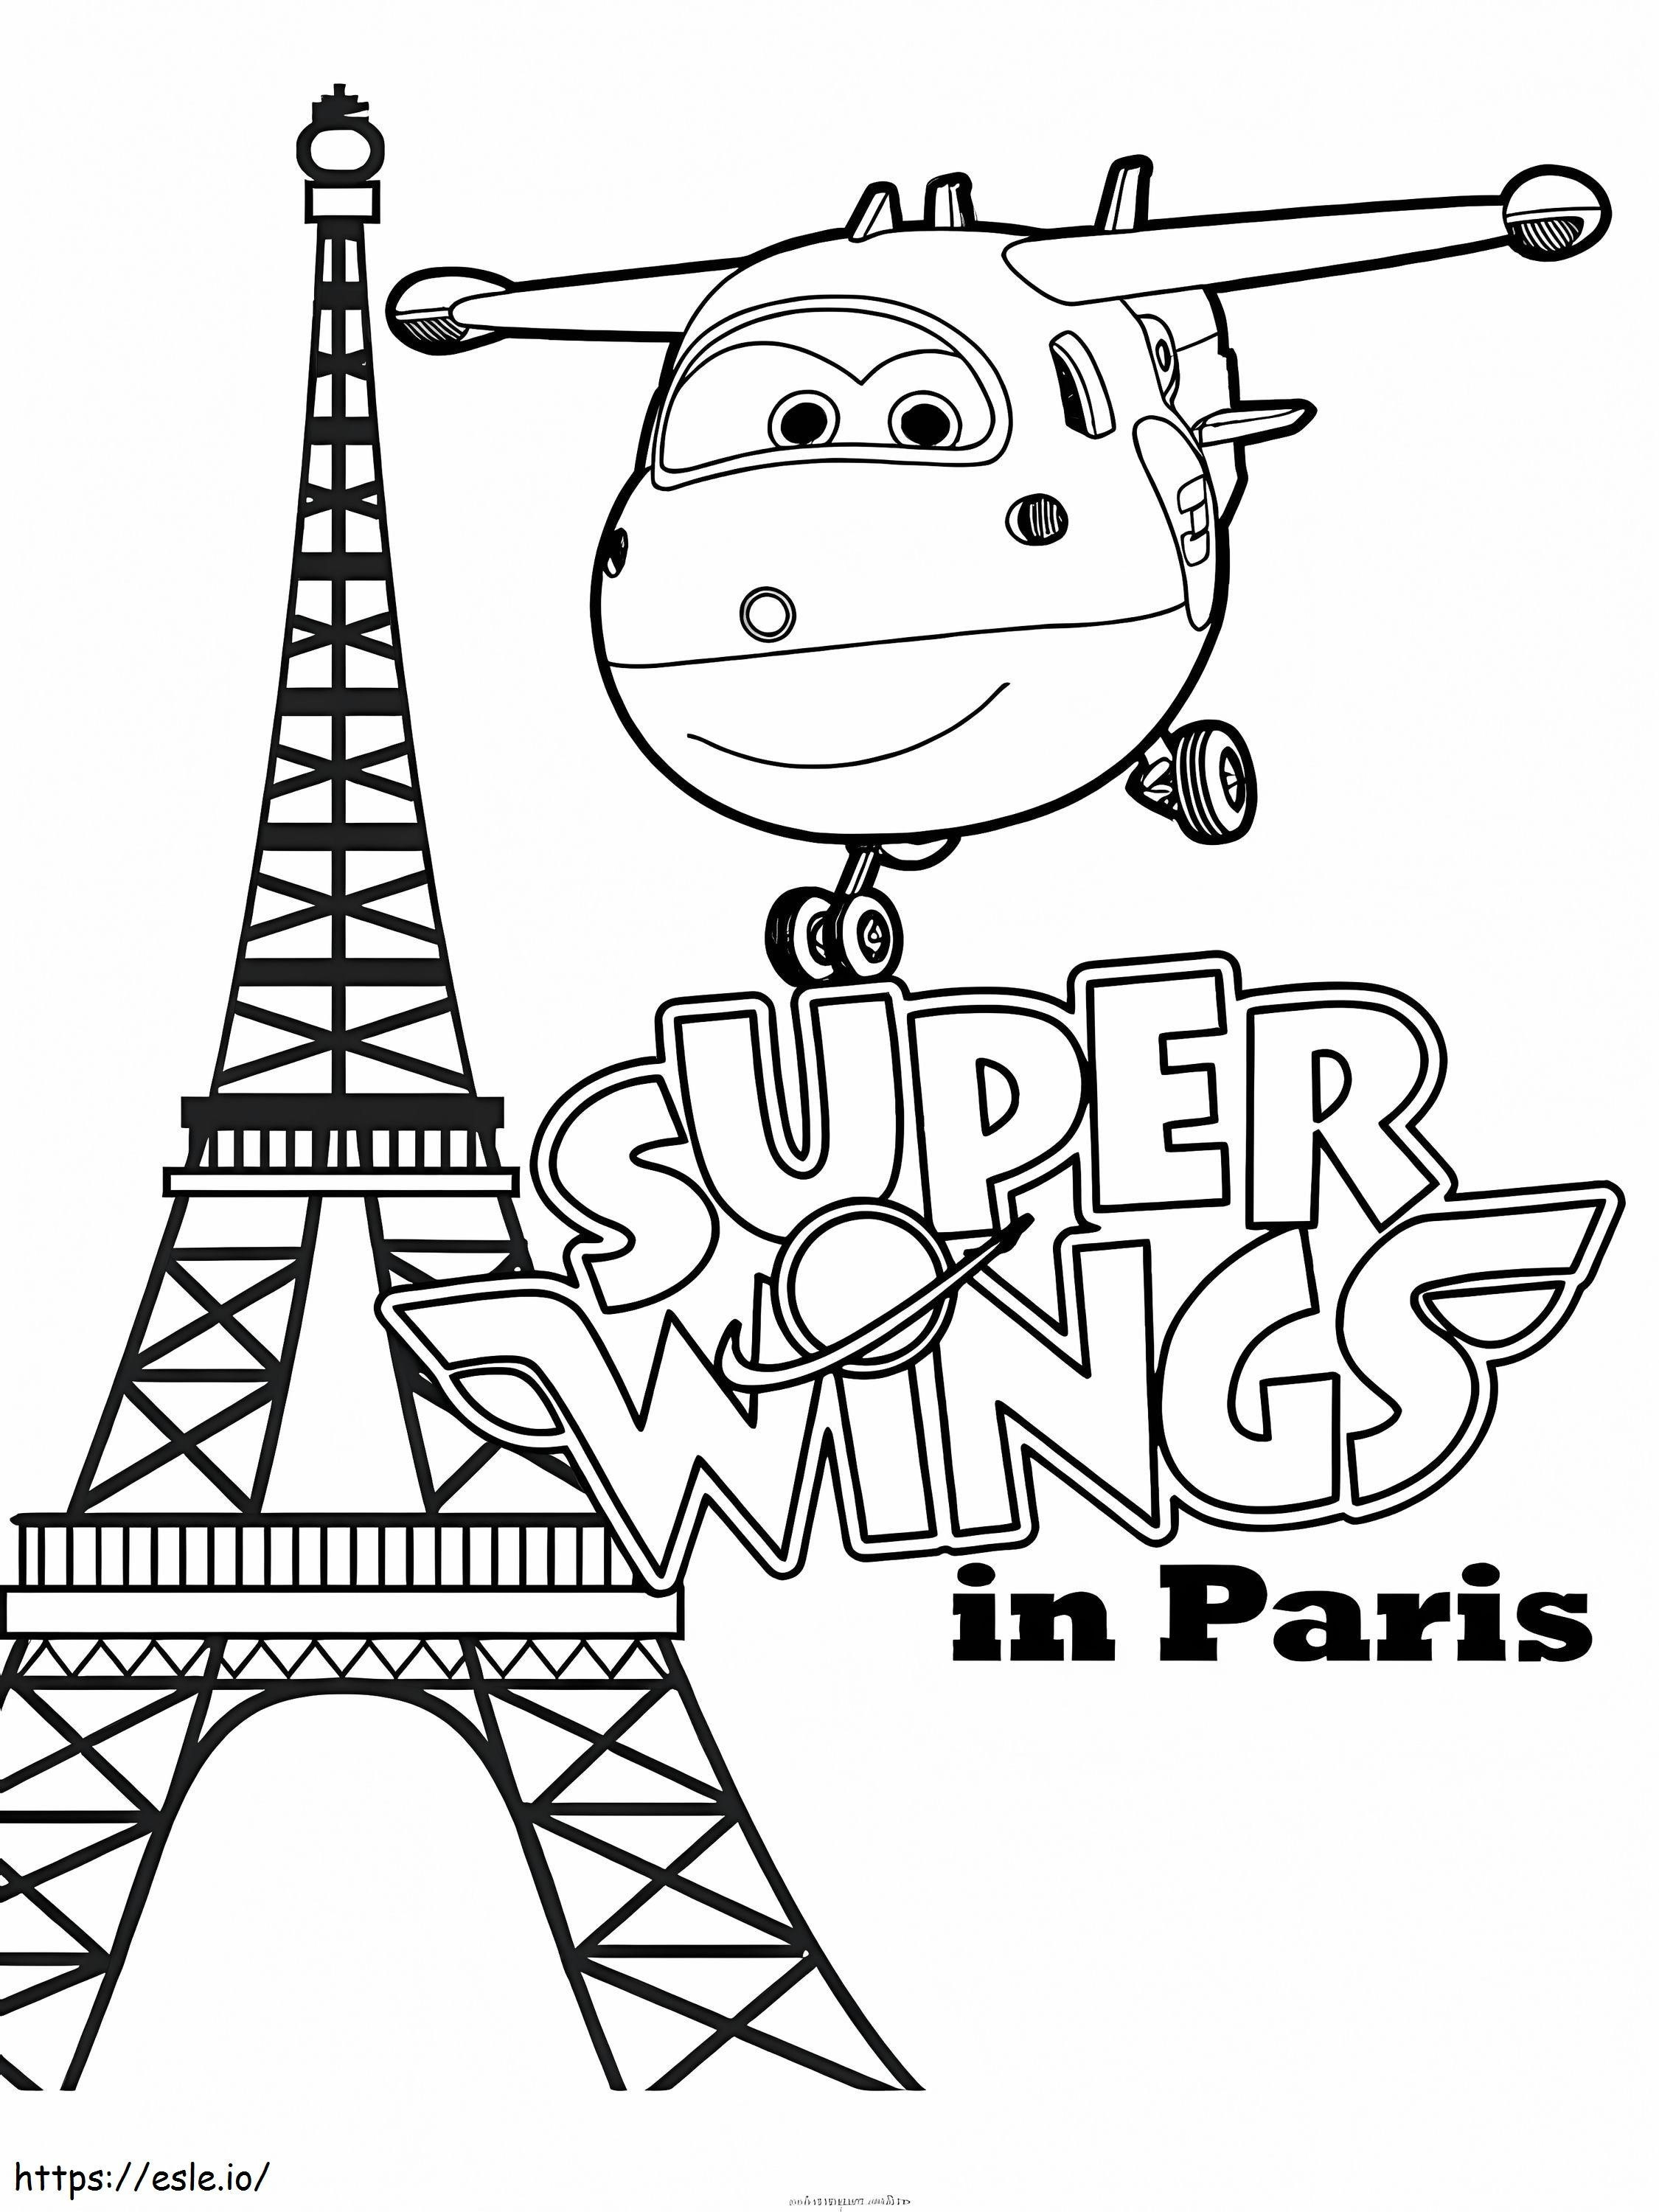 Süper Kanatlar Paris Şehrinde Jett boyama